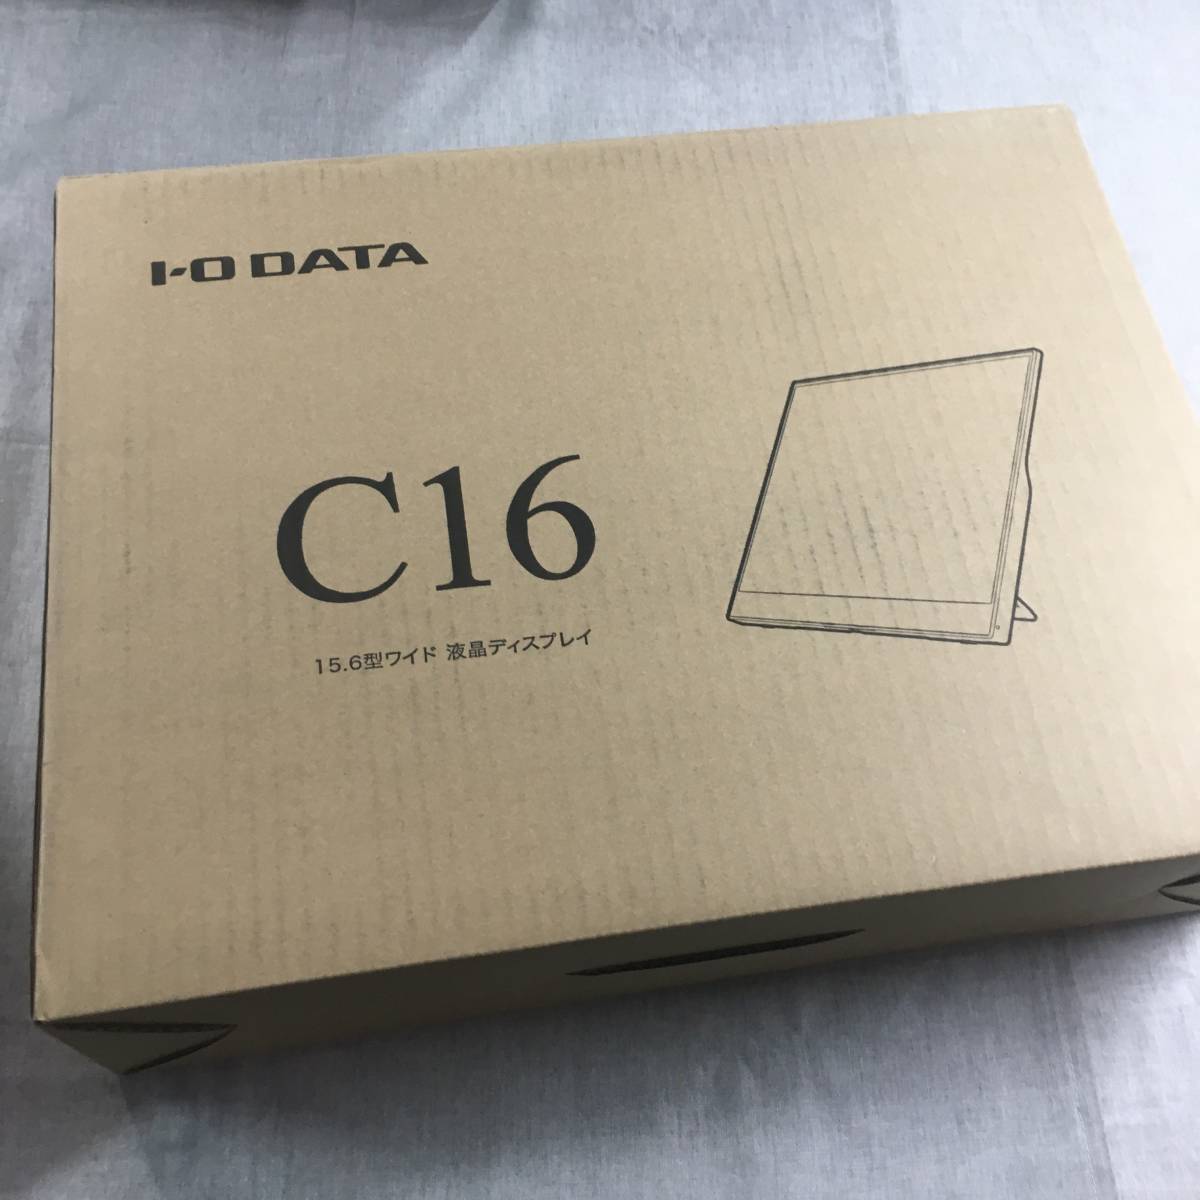 C16 15.6型ワイド液晶ディスプレイ アイ・オー・データ - 9